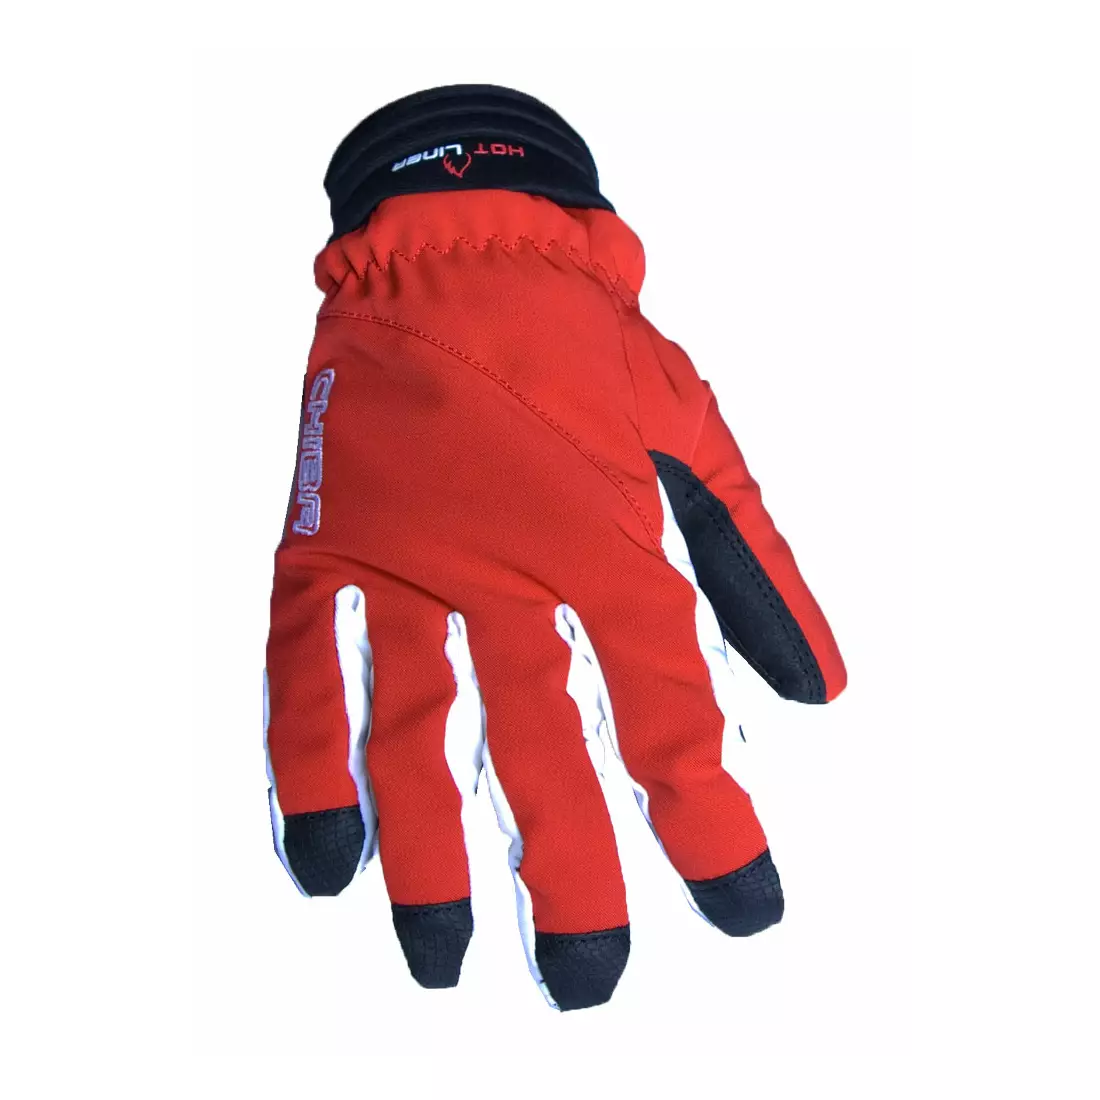 CHIBA women's winter gloves LADY WATERPROOF